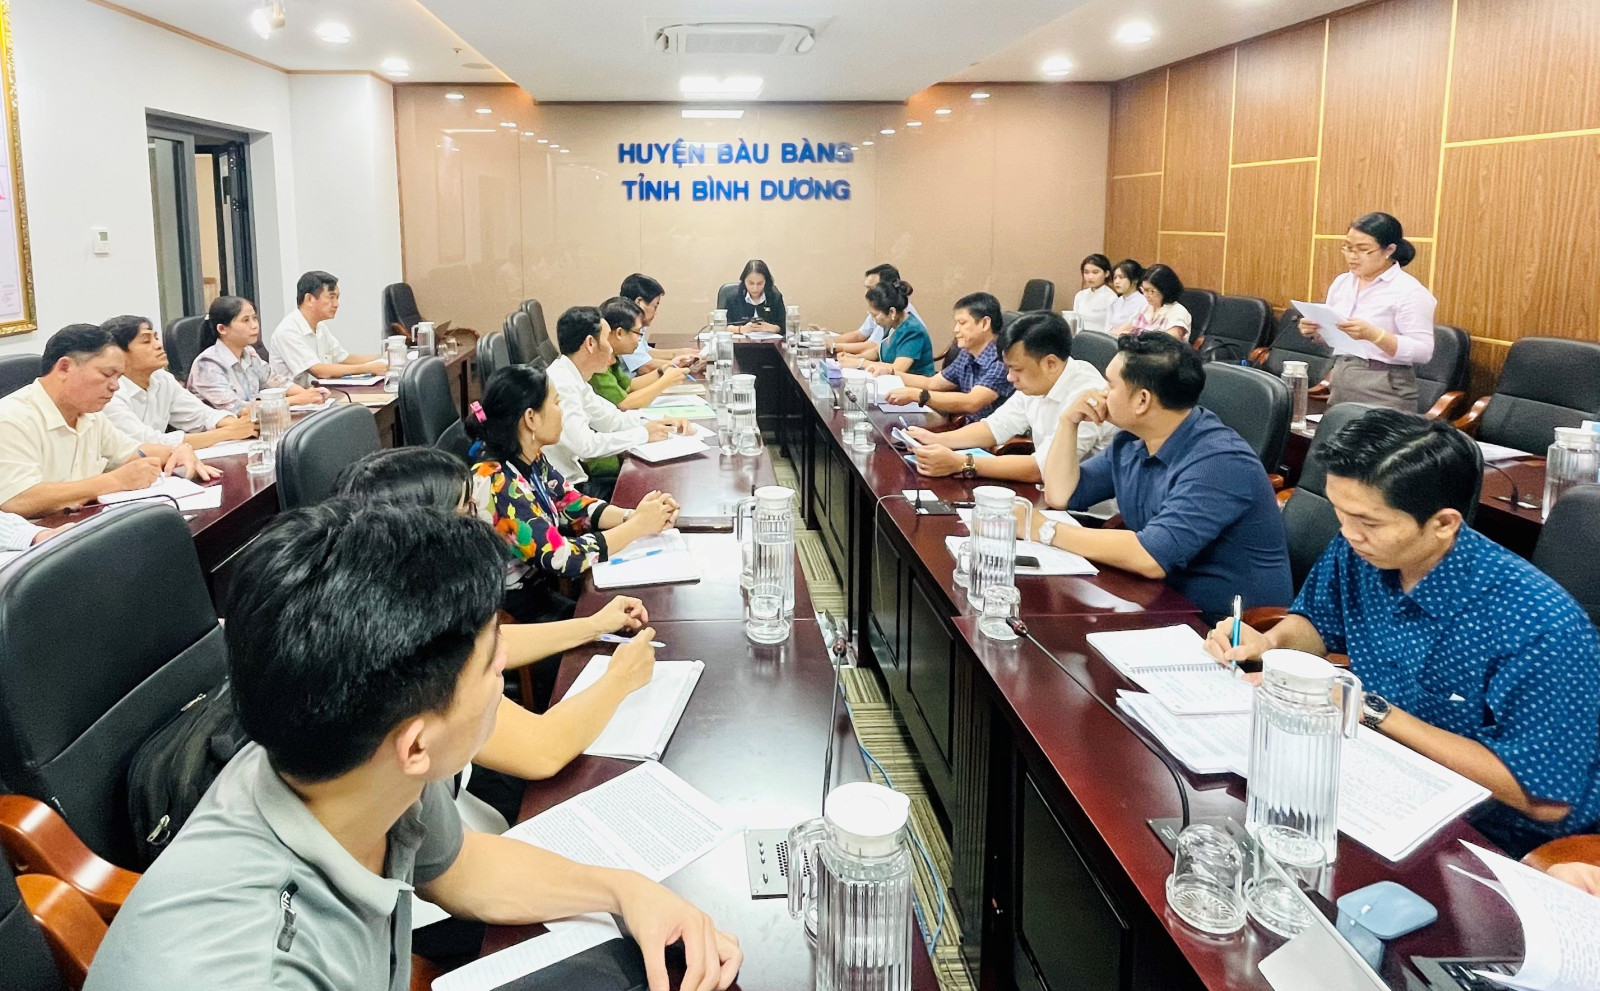 Đoàn giám sát của Ban pháp chế HĐND tỉnh khảo sát về công tác PCTP, tệ nạn xã hội và xây dựng phong trào toàn dân bảo vệ ANTQ trên địa bàn huyện Bàu Bàng.